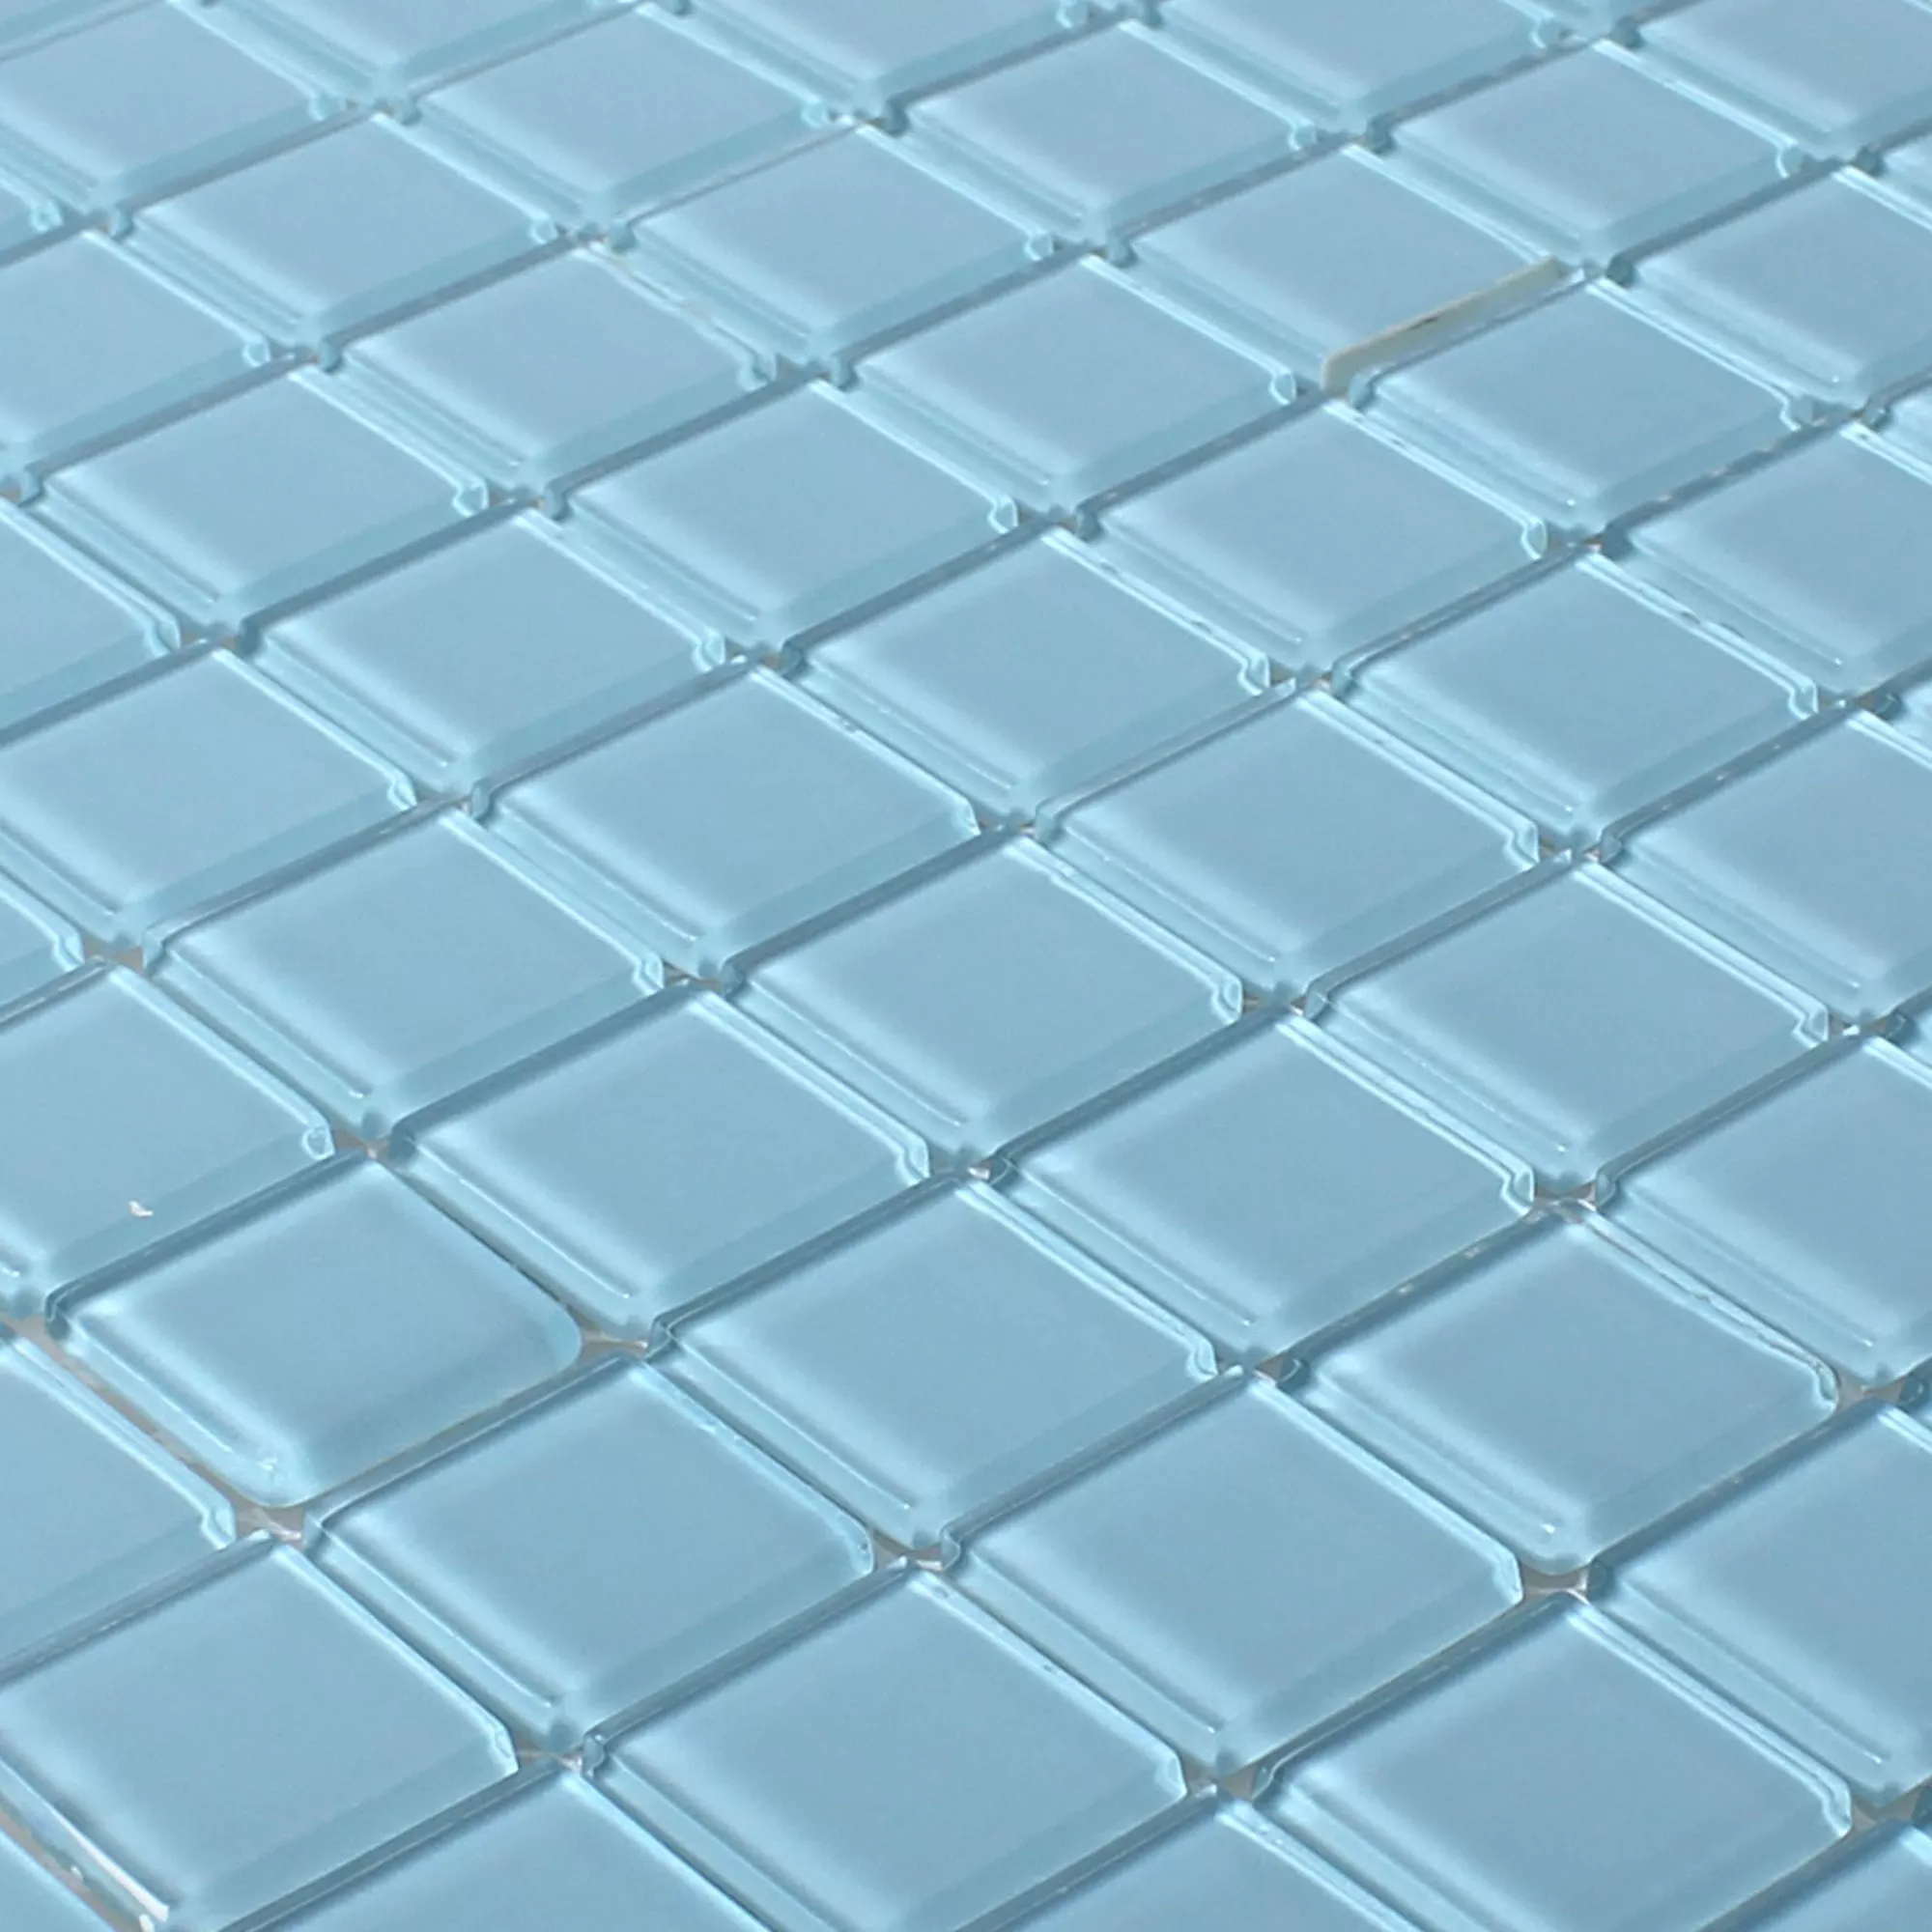 Mosaico De Vidro Azulejos Florida Azul Claro